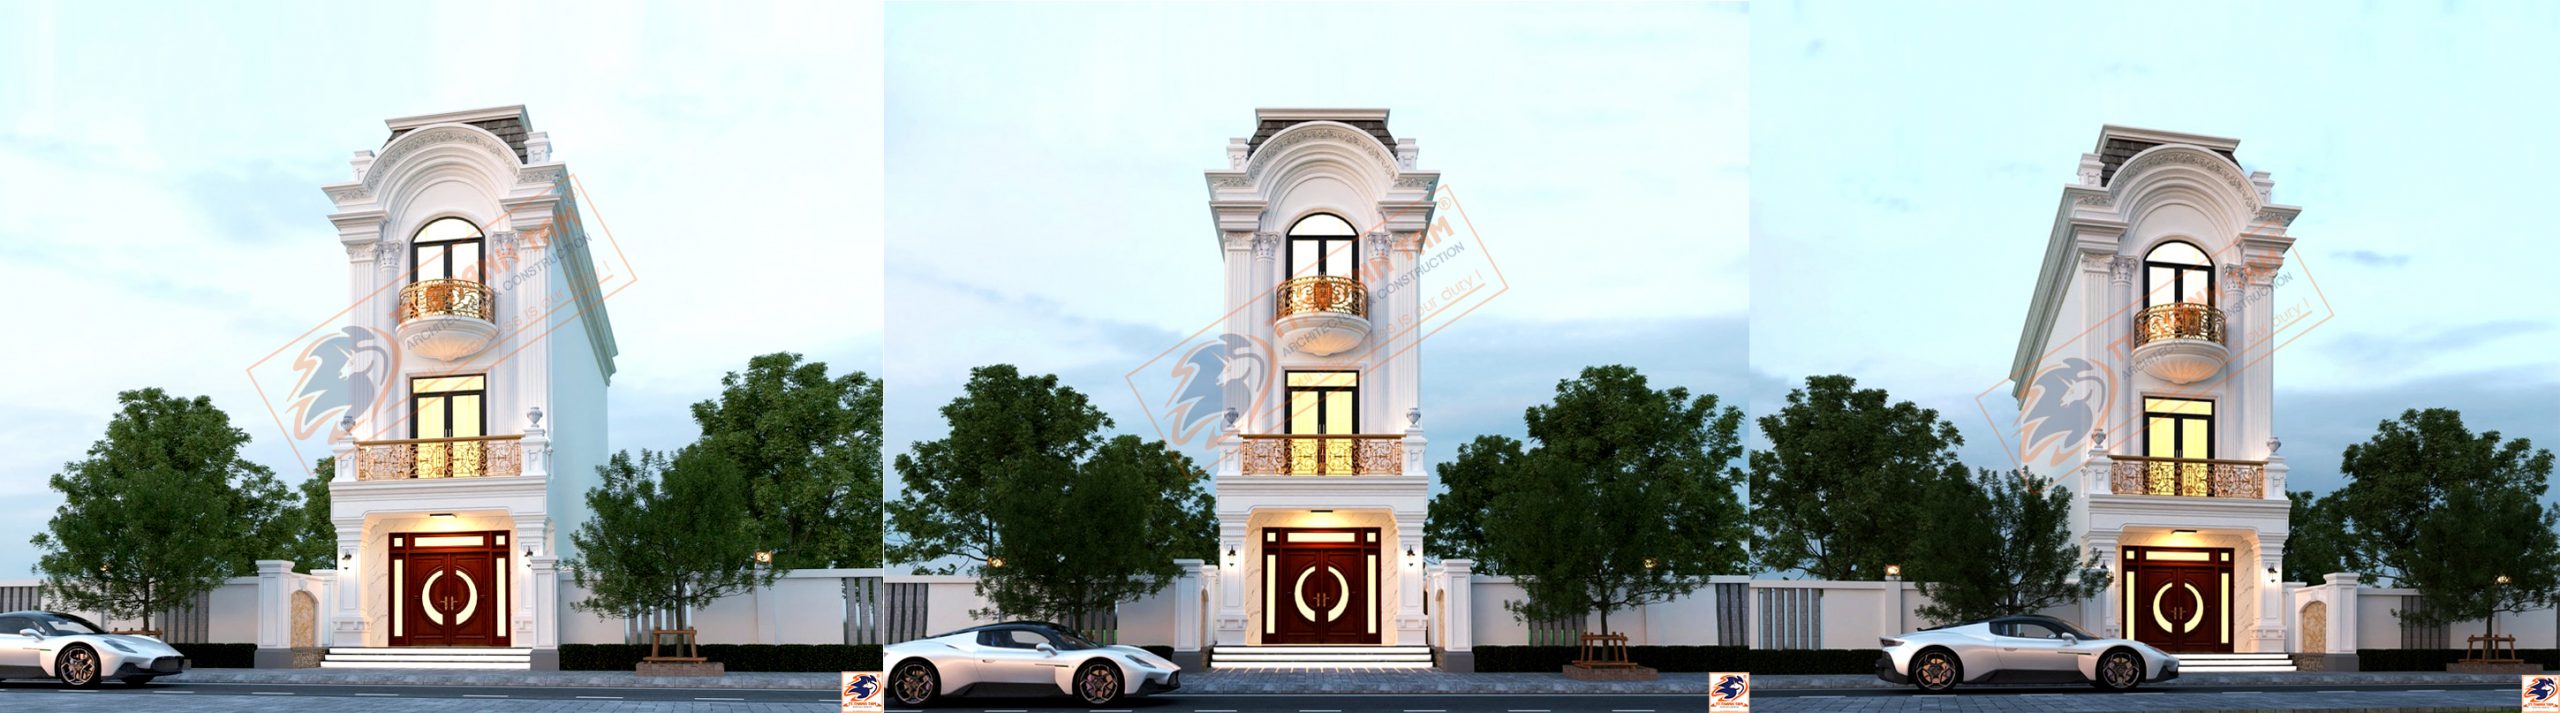 Thiết kế Nhà phố Tân cổ điển 3 tầng 4mx16m kết hợp kinh doanh tại Vĩnh Long – Việt Nam